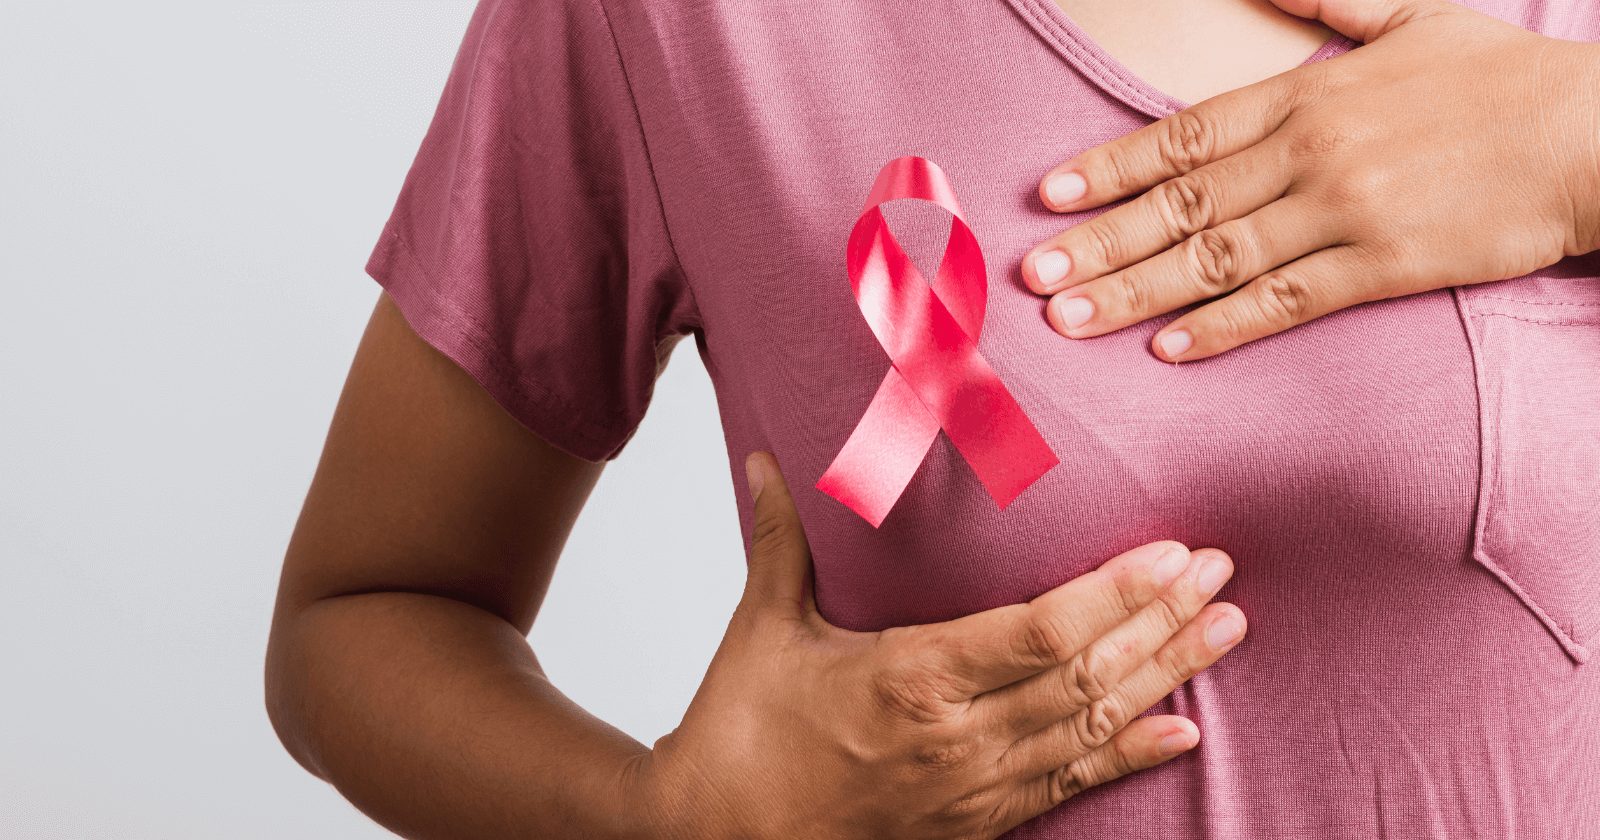 7 dicas para prevenir o câncer de mama e trazer mais saúde para sua rotina